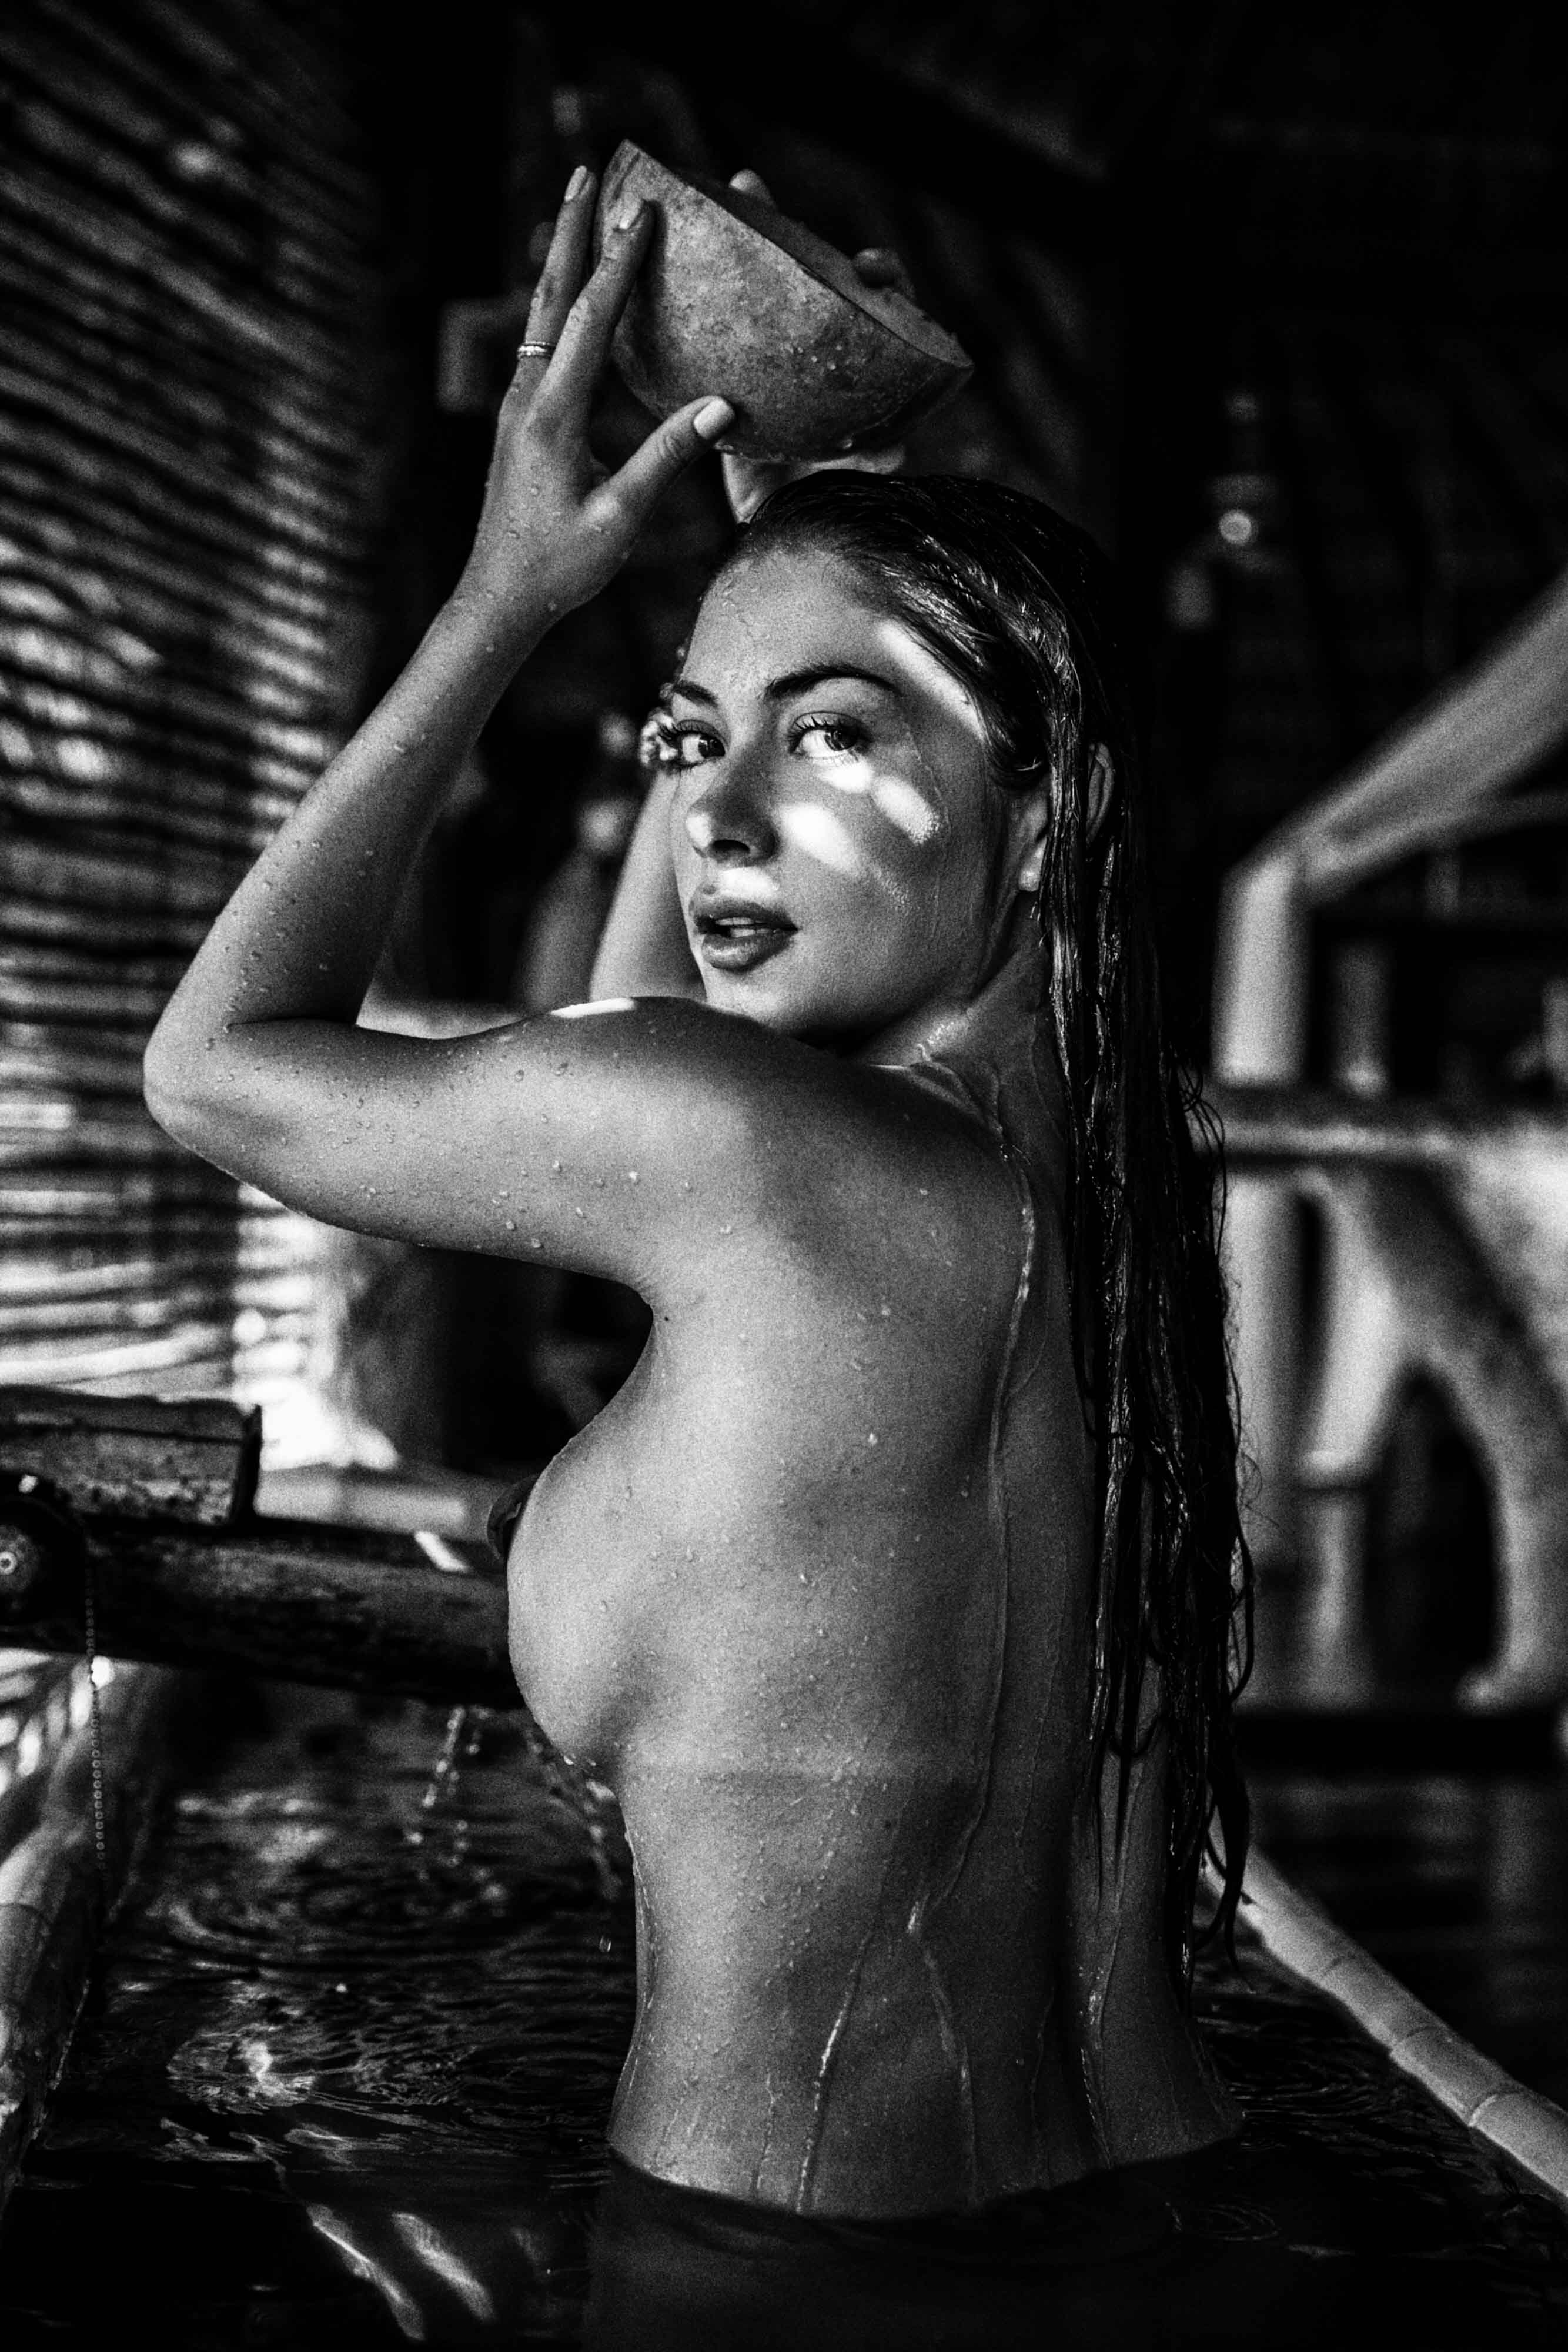 Arianny Celeste nude in TULUM MEXICO - Badboi photo shoot 20x UHQ photos 13.jpg